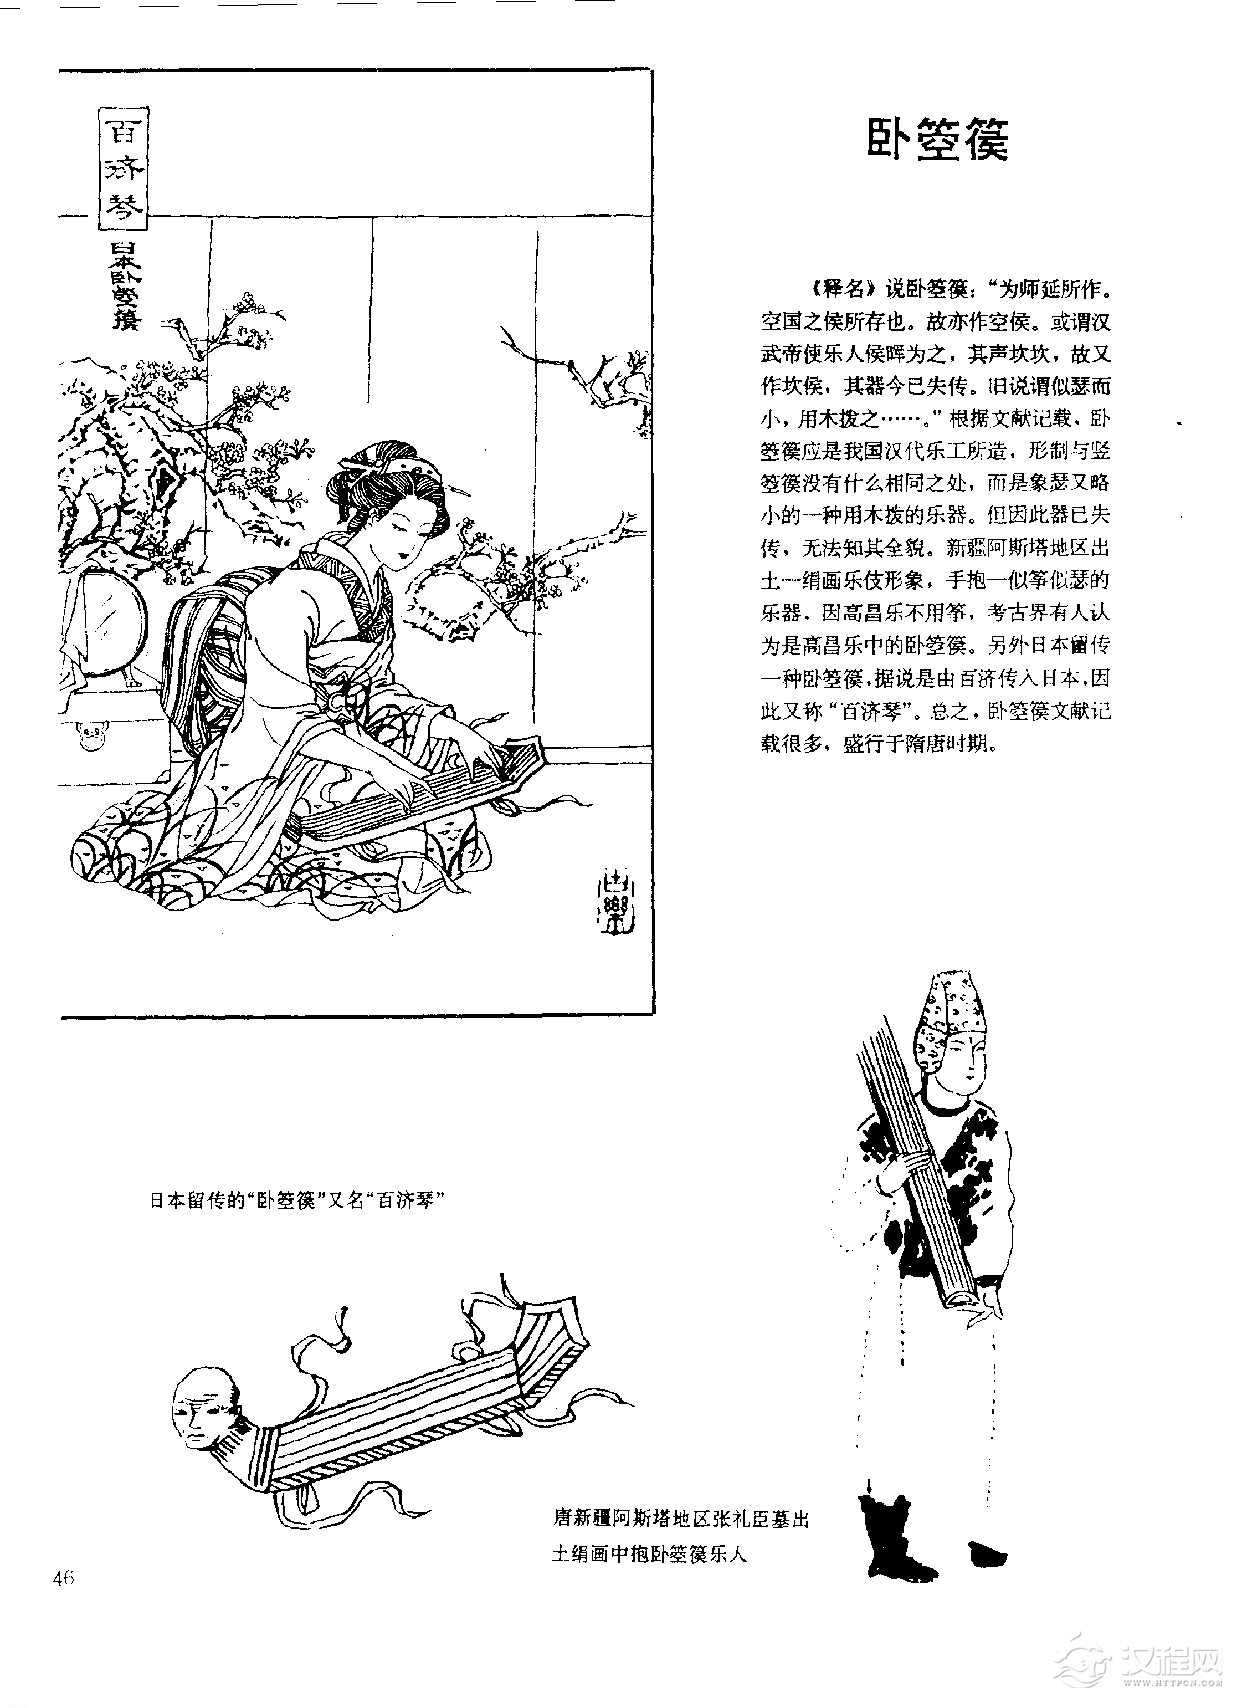 中国古代乐器《卧箜篌》